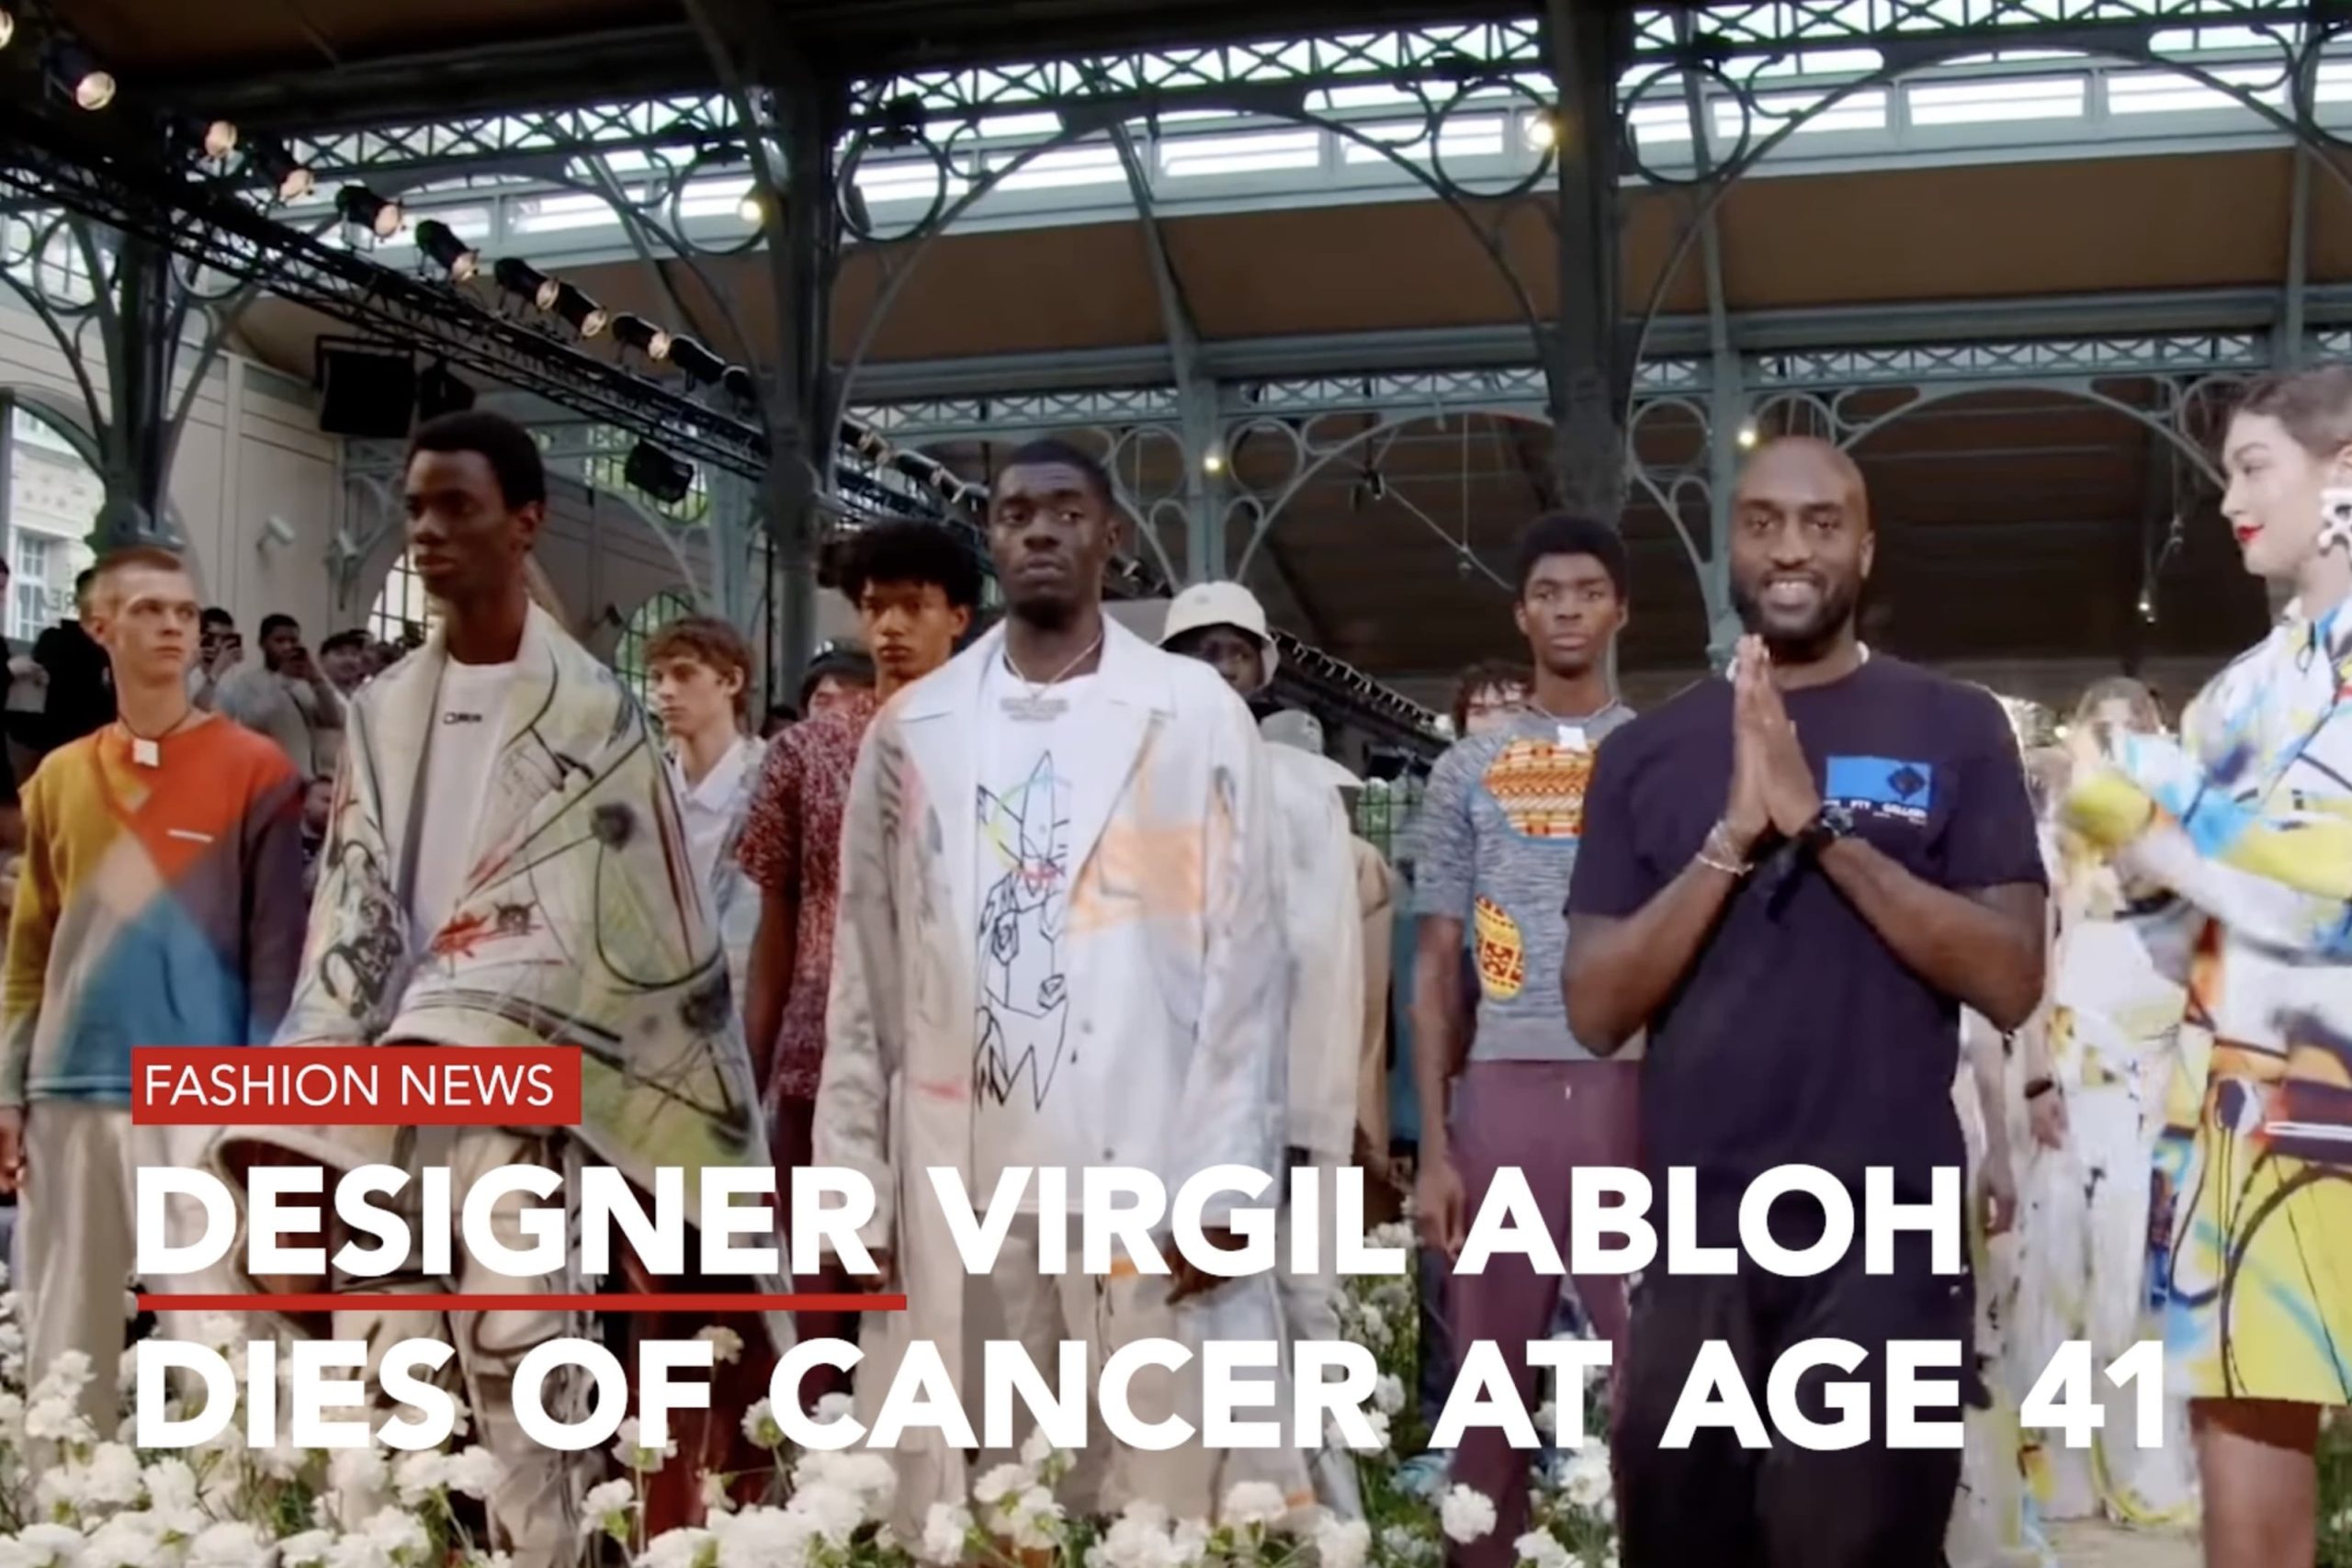 Fashion designer Virgil Abloh dies of cancer at 41